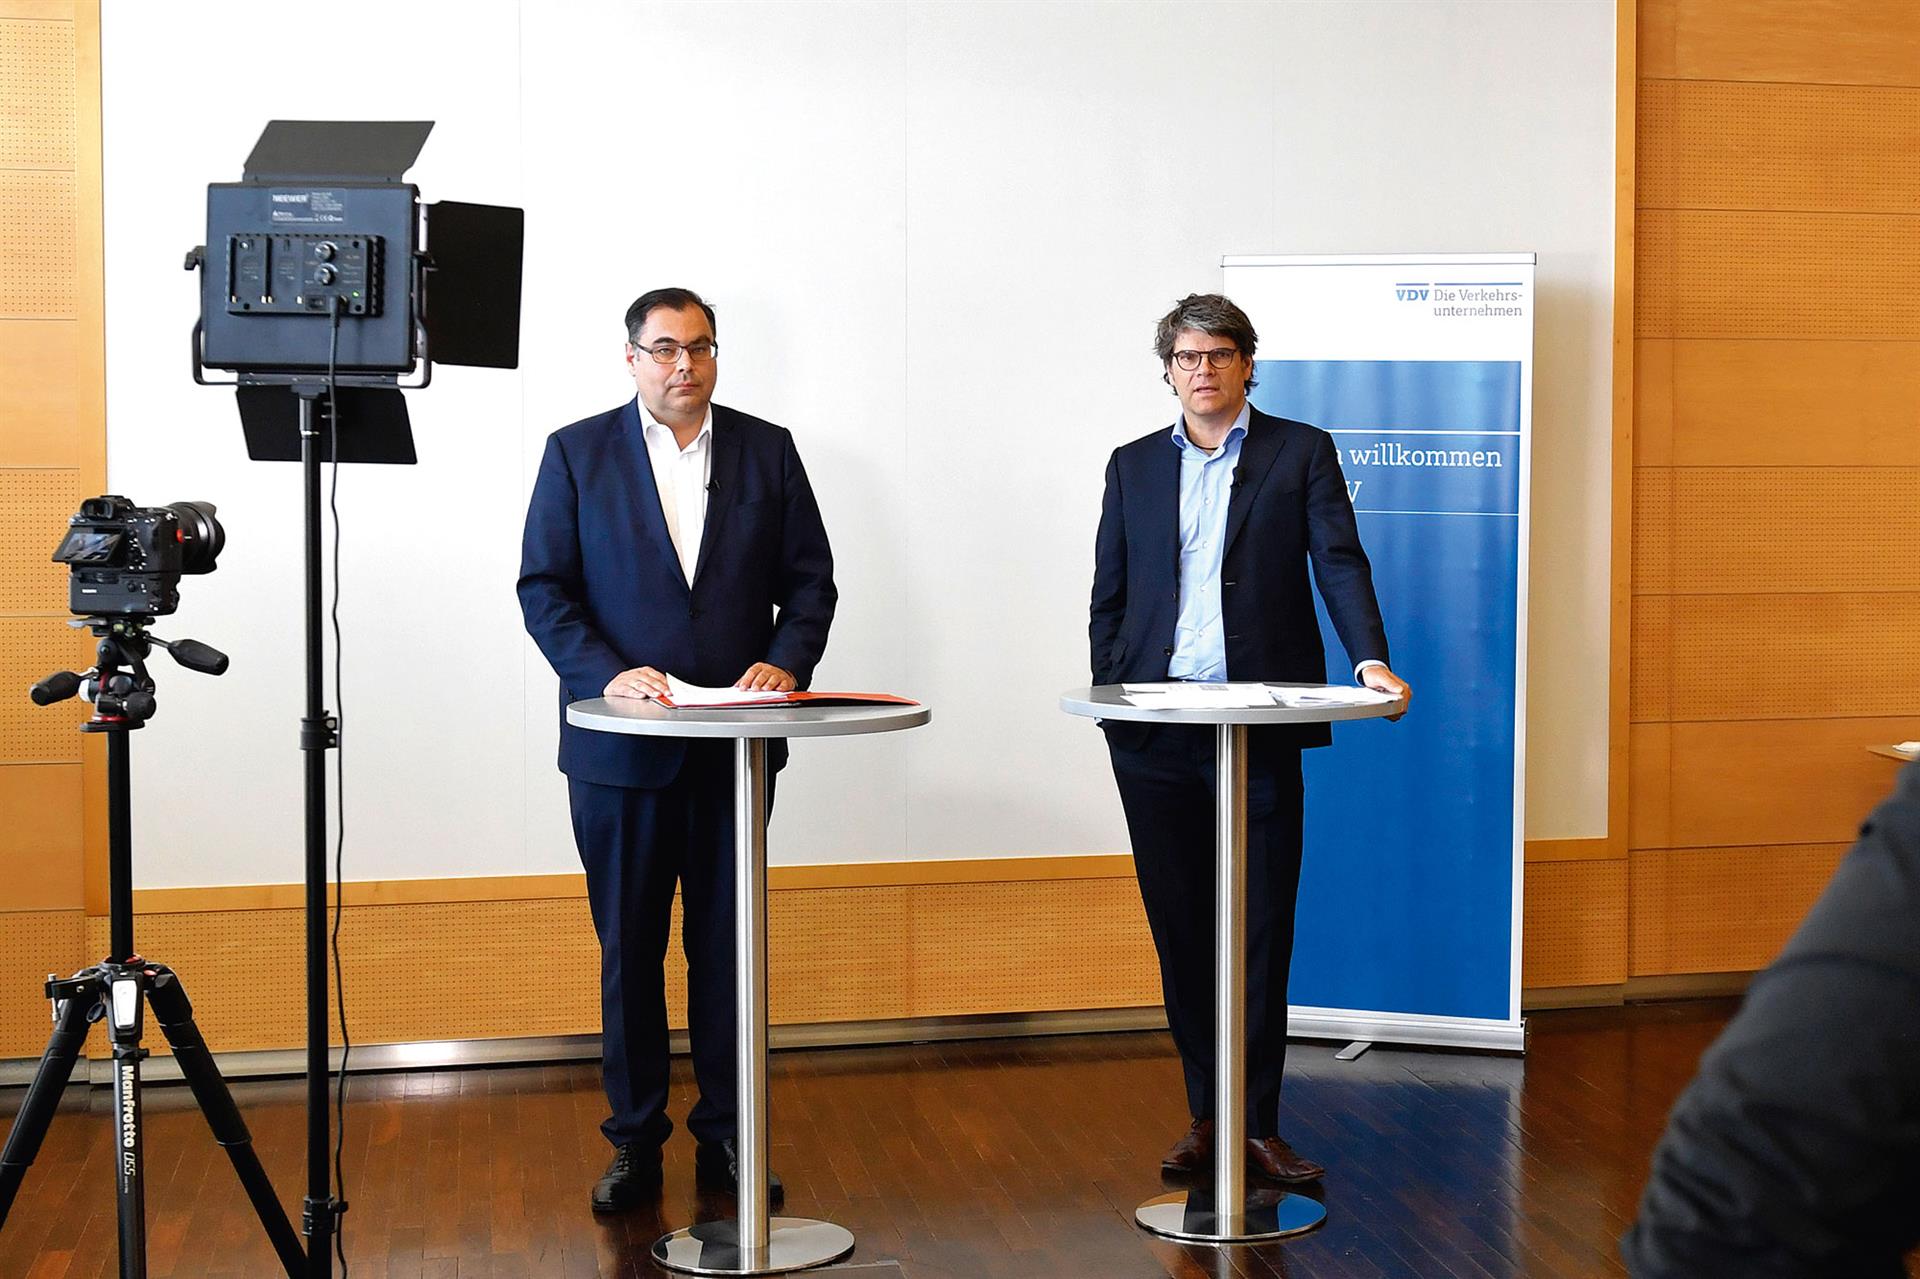 Jahrestagung digital: VDV-Präsident Ingo Wortmann und Hauptgeschäftsführer Oliver Wolff traten mit Abstand in München vor die Kamera, um eine Zwischenbilanz der Coronakrise zu ziehen.